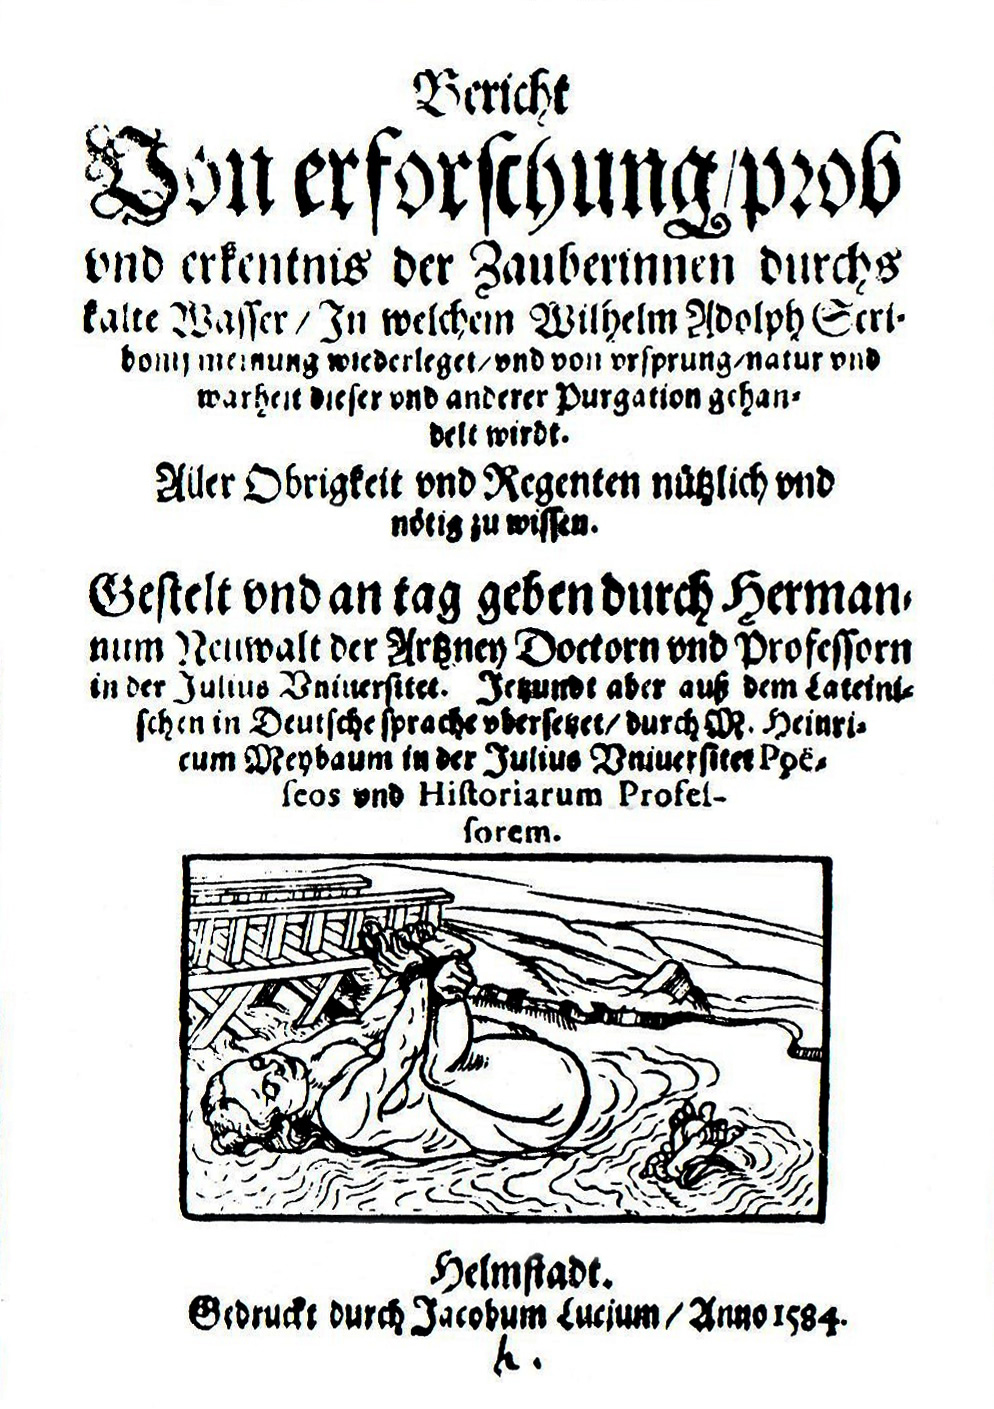 Wasserprobe, Titelblatt der Schrift von Hermann Neuwalt, Helmstedt 1581  (Quelle: Wikipedia, gemeinfrei)